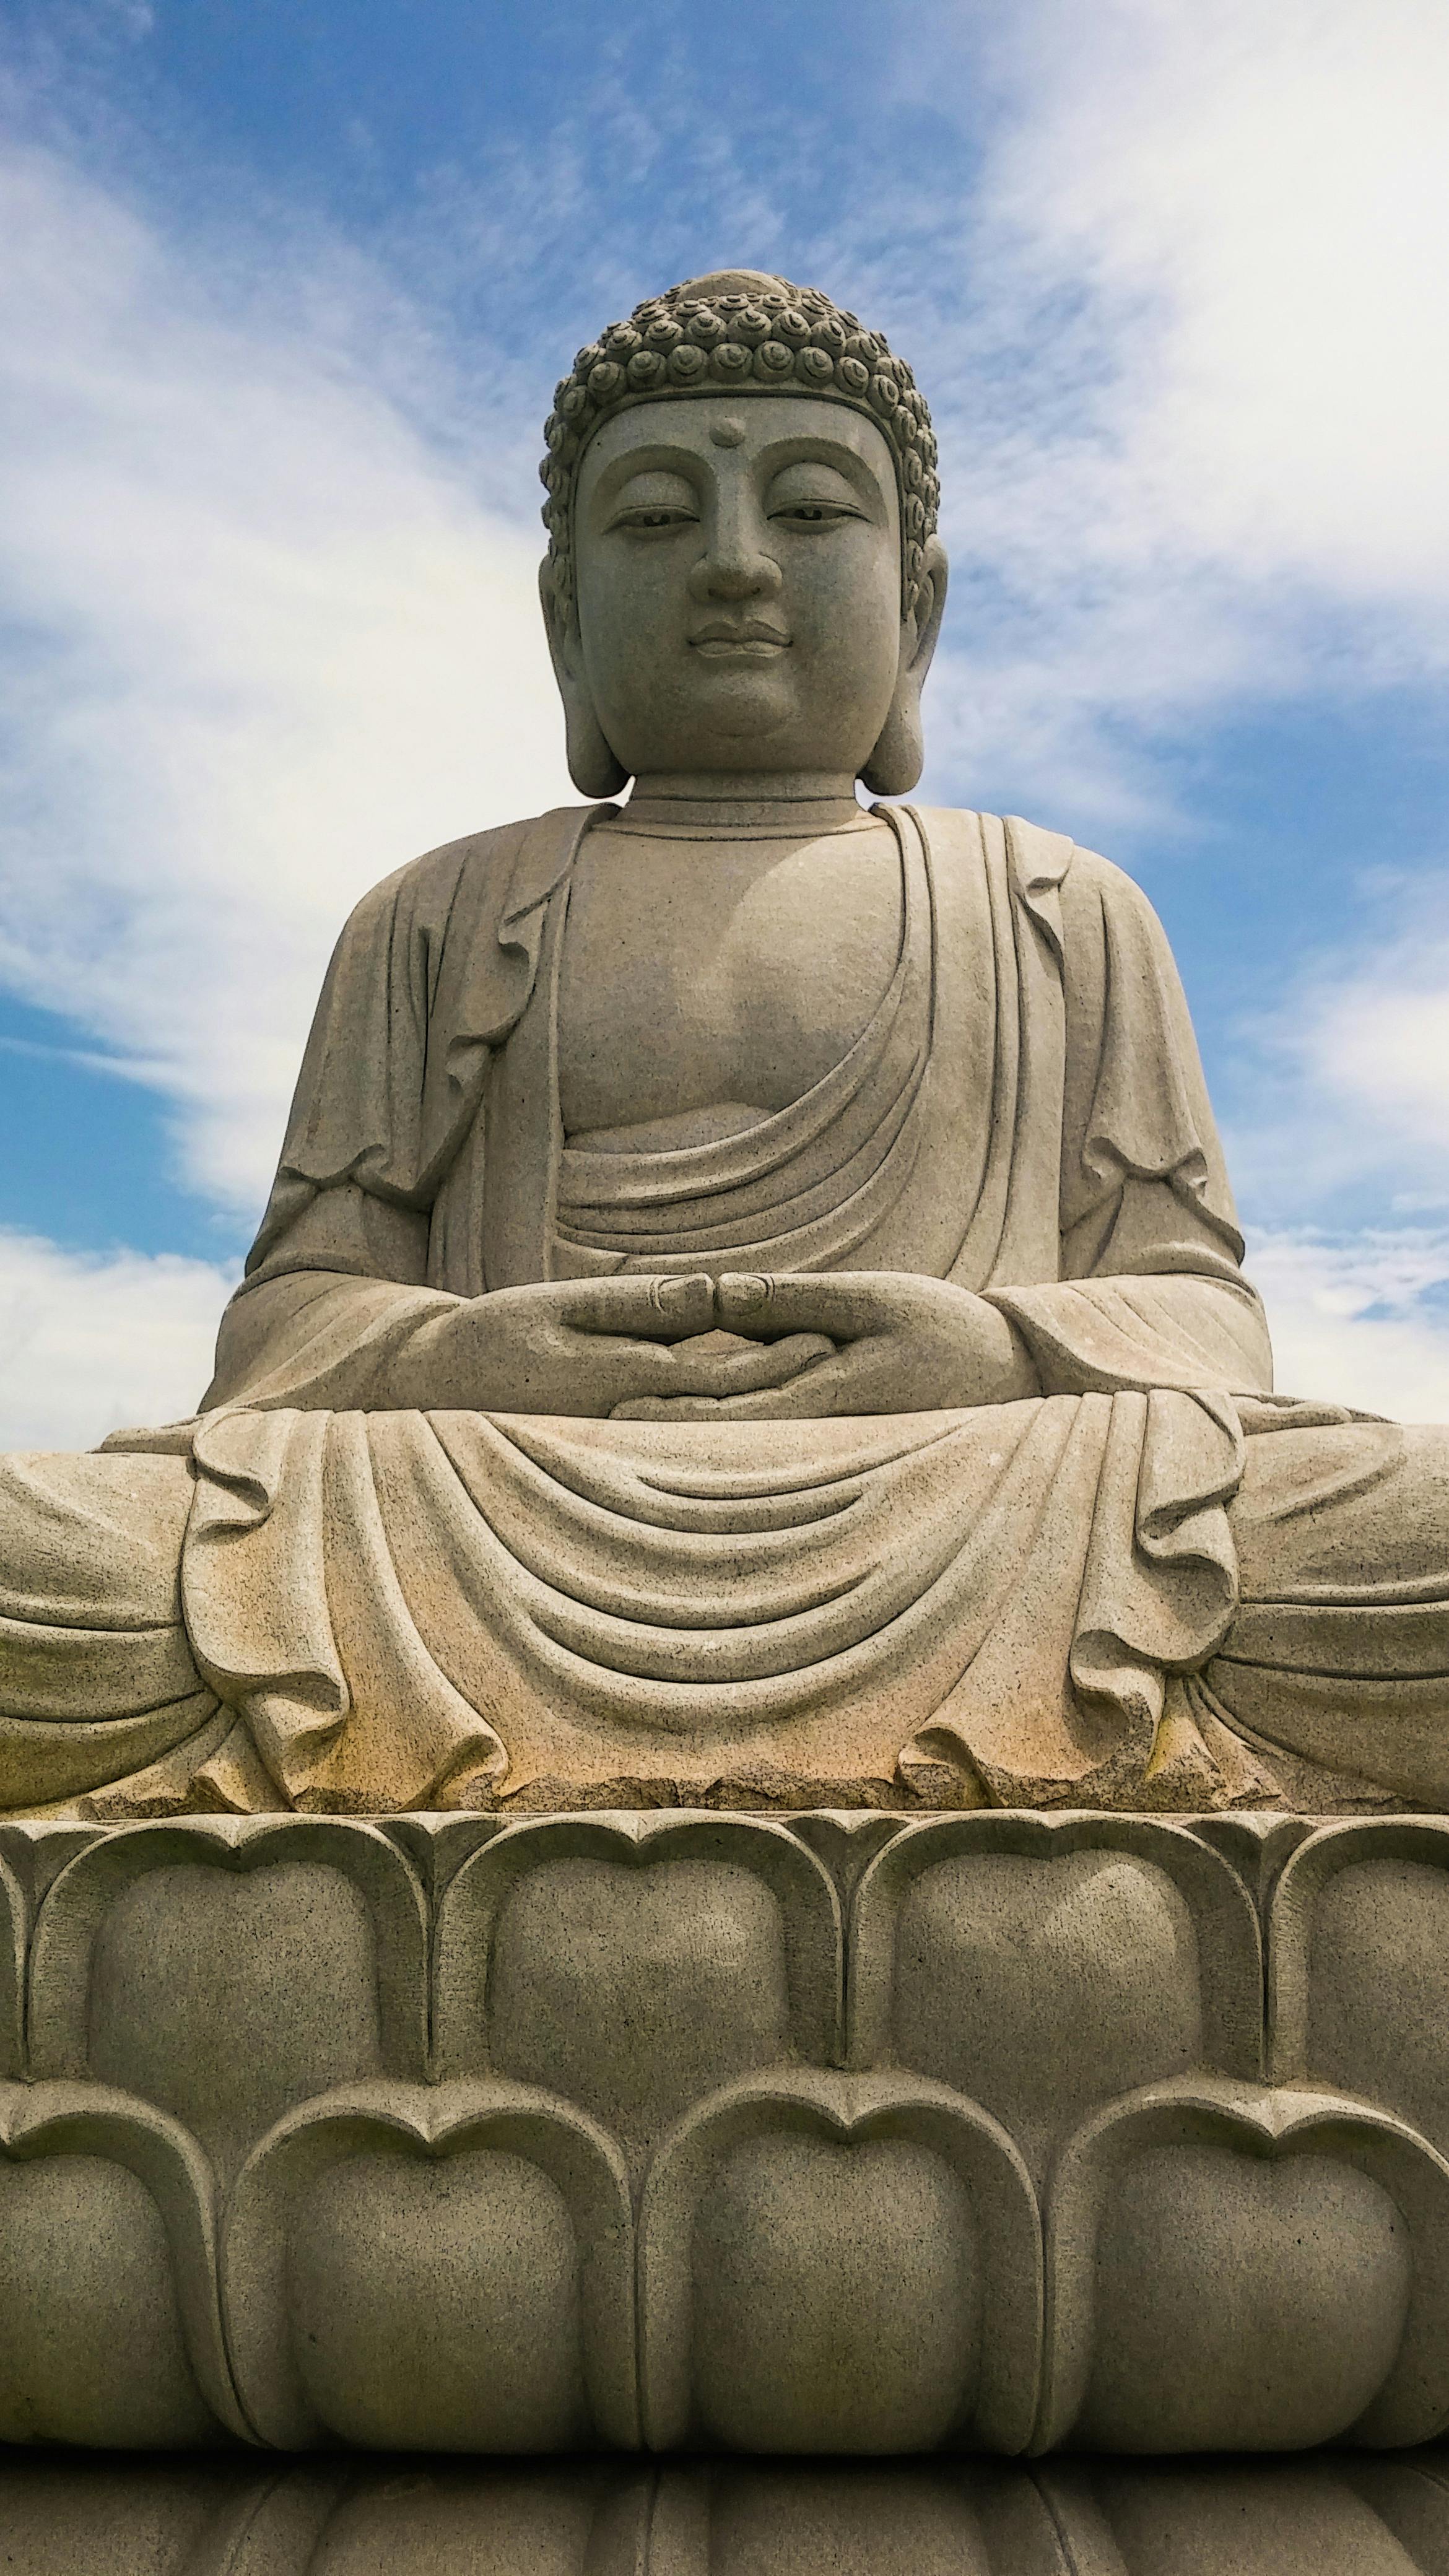 250+ Amazing Buddha Photos · Pexels 